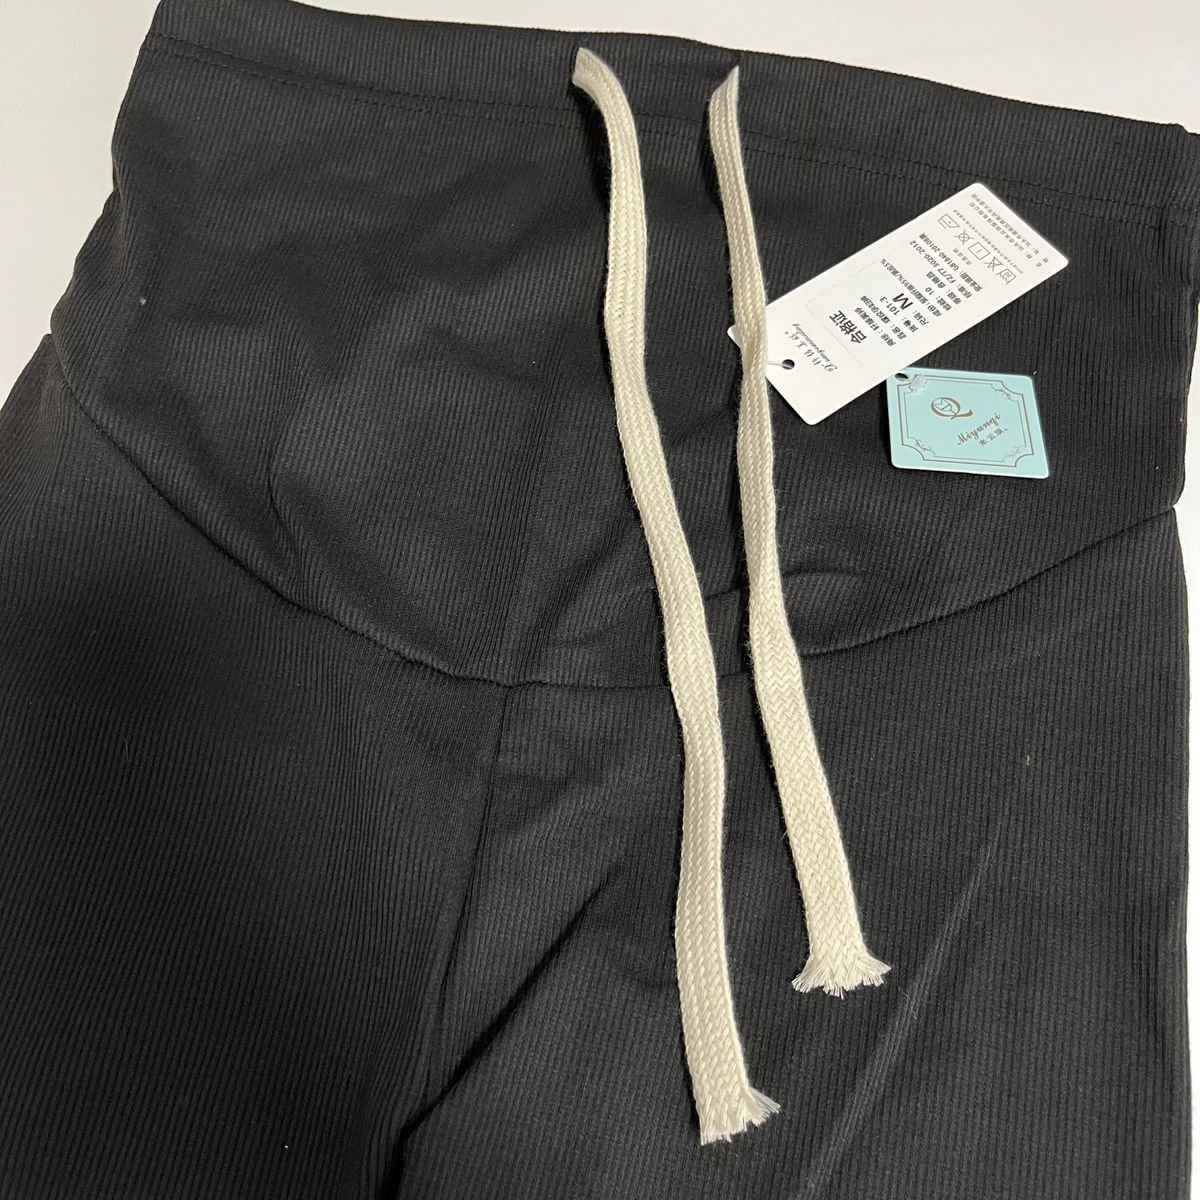 新品未使用 レディース マタニティ 妊婦 リブ レギンス パンツ スパッツ ブラック 黒 M 韓国ファッション